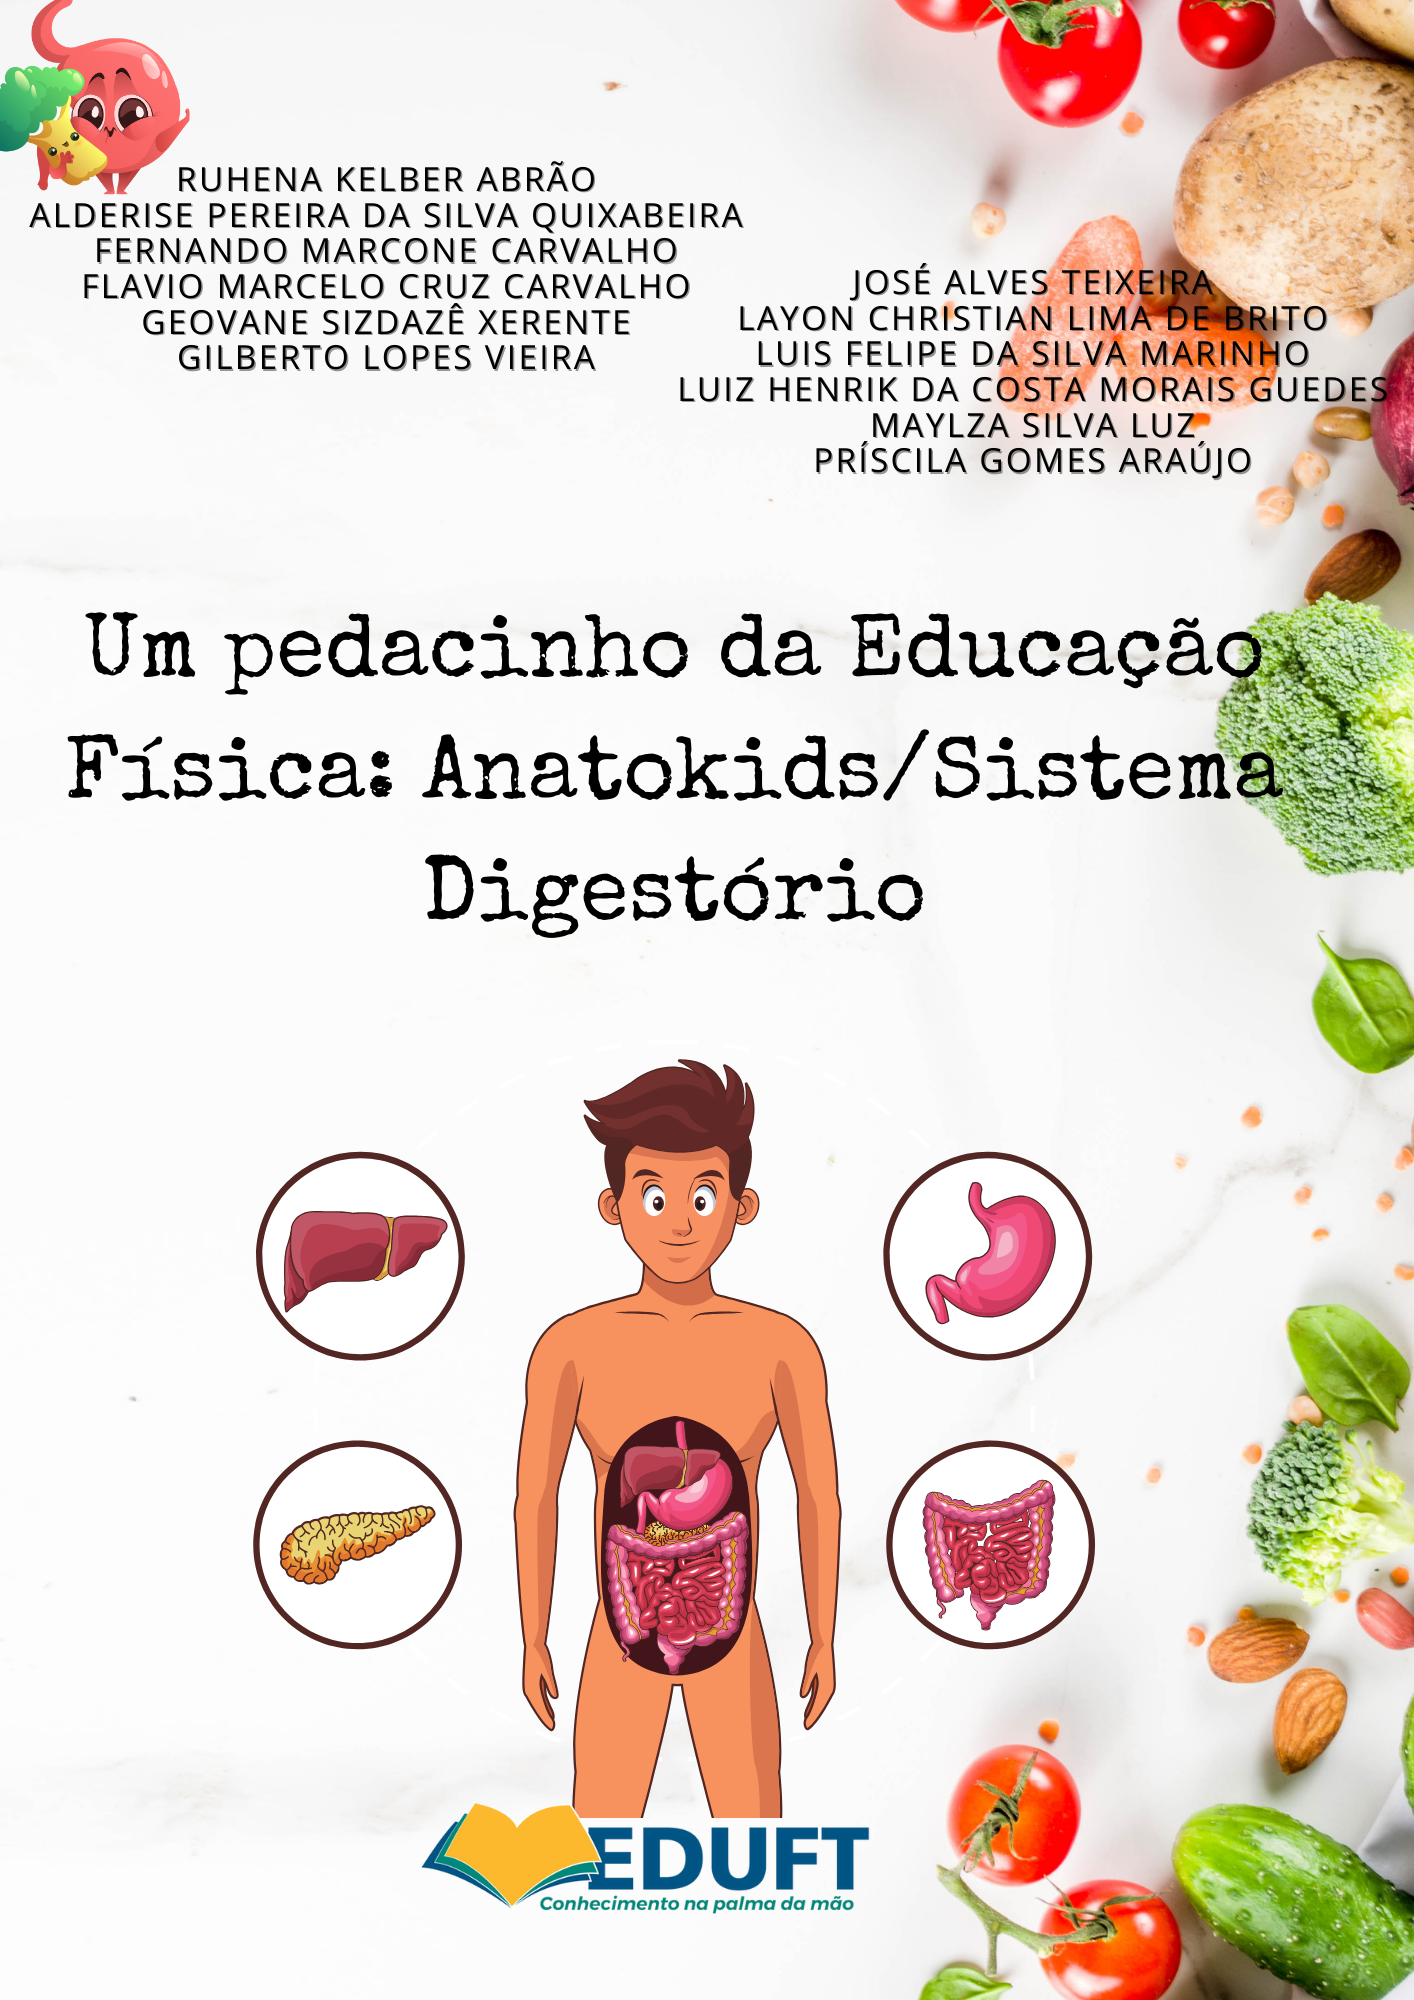 					Visualizar v. 38 n. 1 (1): Um pedacinho da Educação Física: Anatokids/Sistema Digestório
				